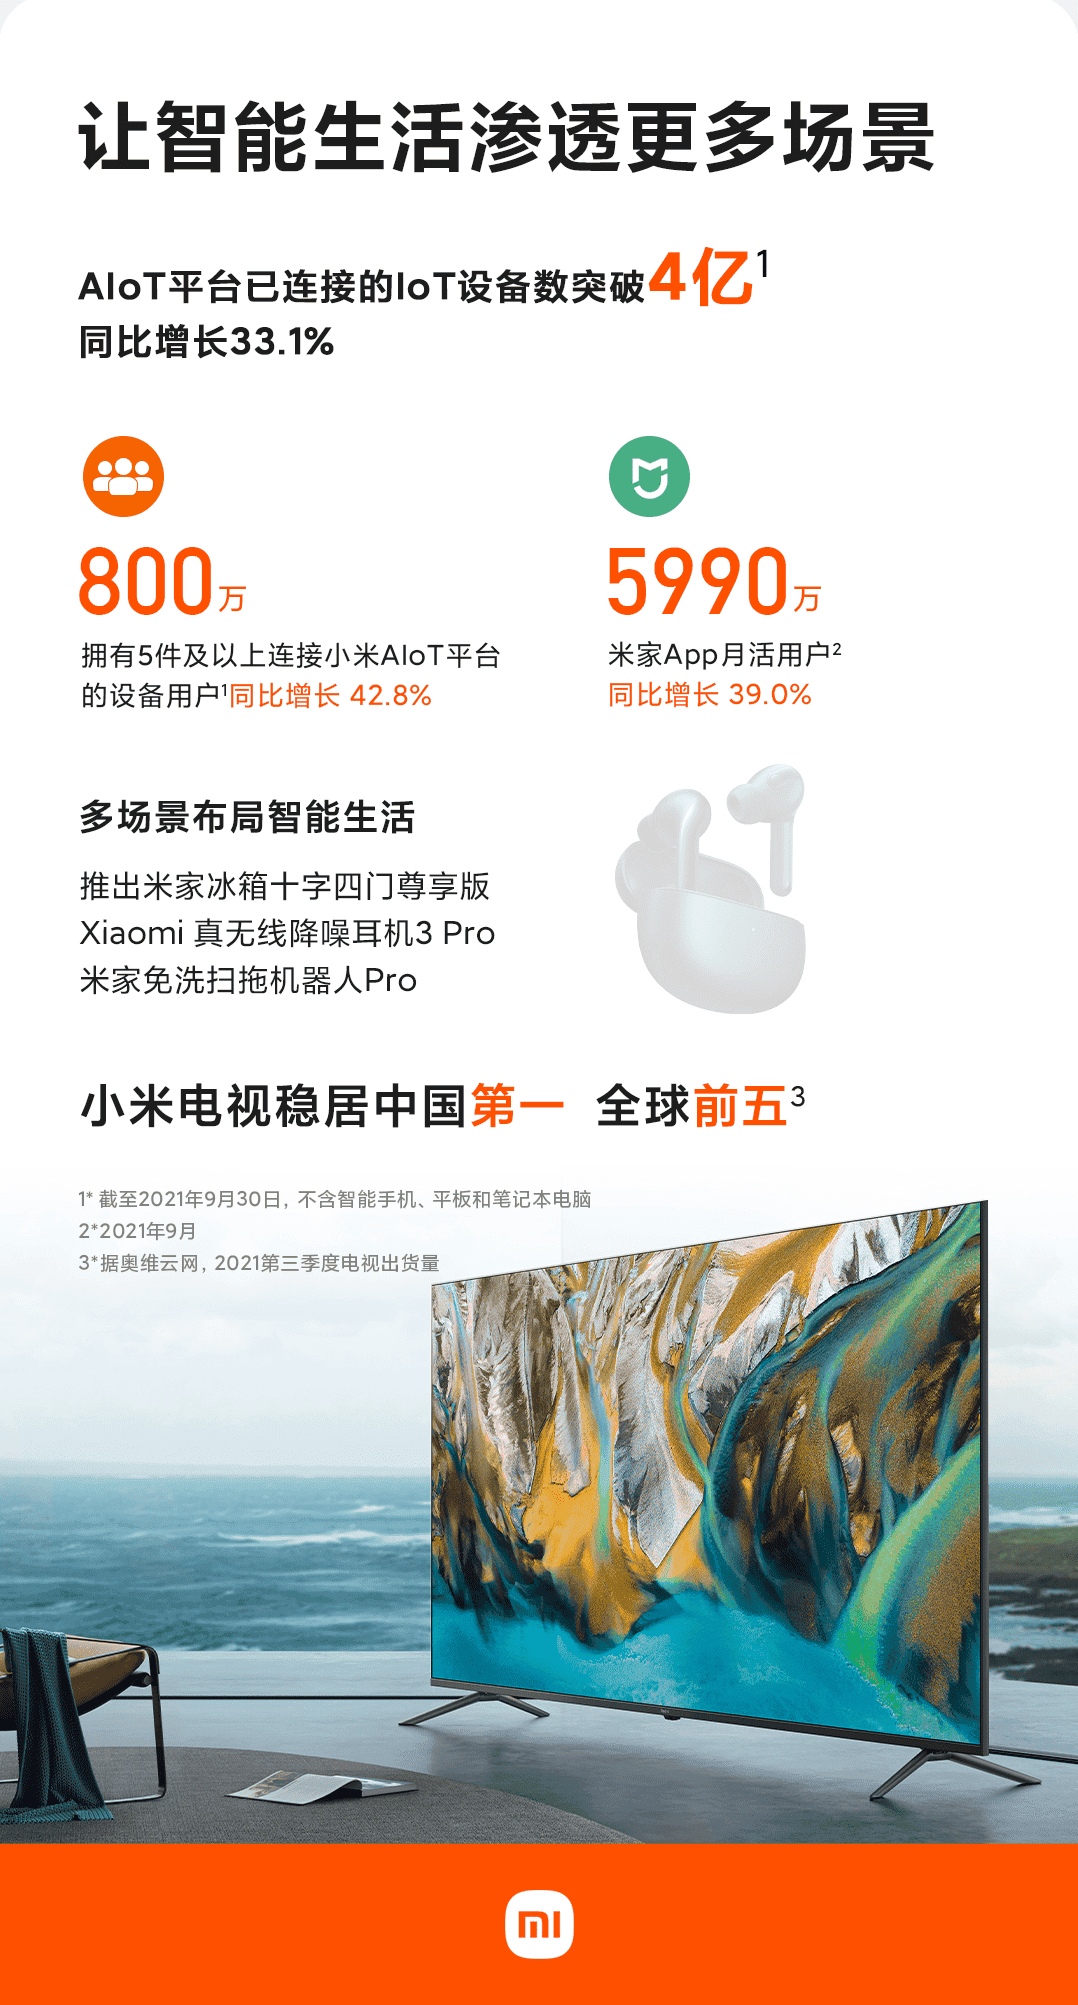 Xiaomi smart tv